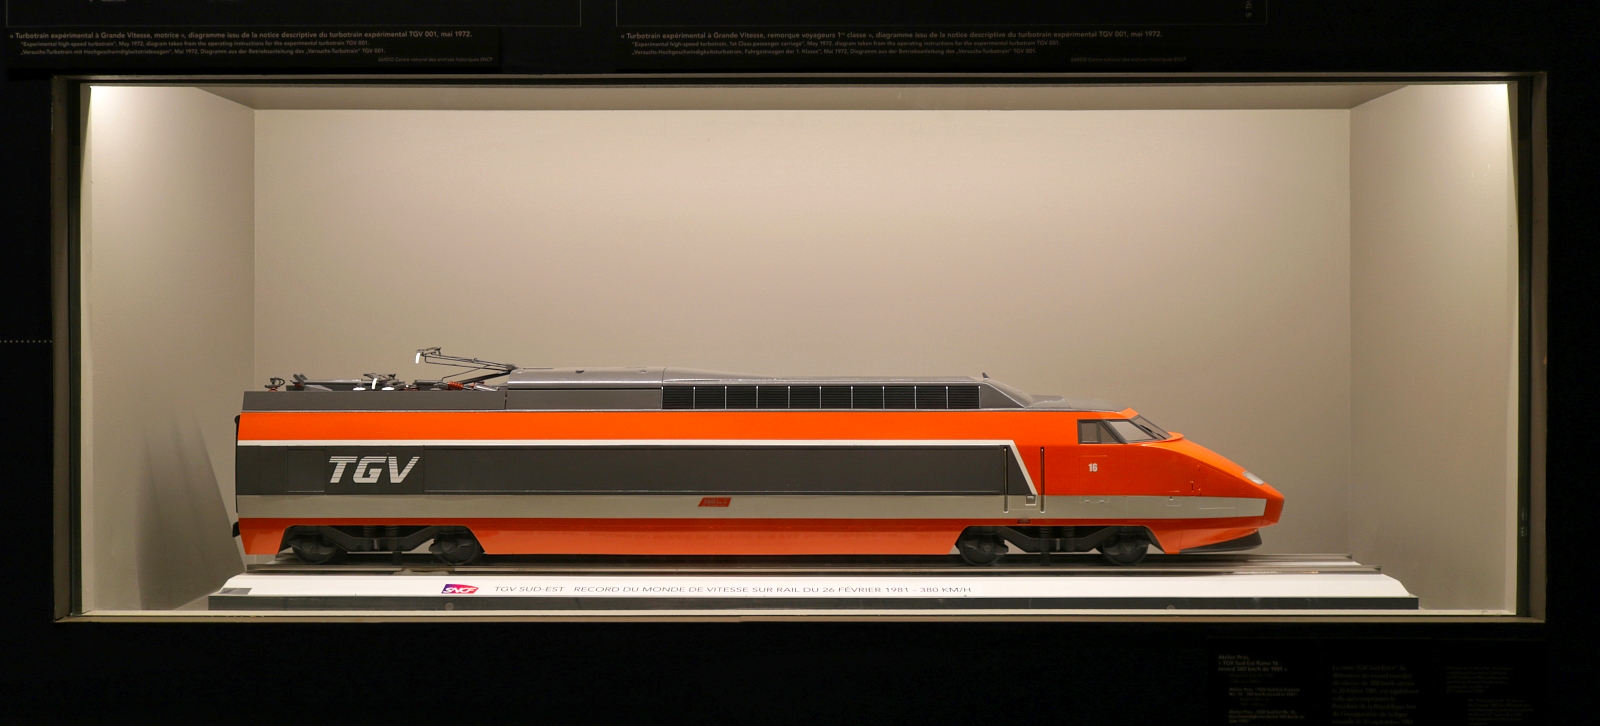 Als Modell kann der Triebkopf 16 (Alstom TGV Paris-Sud-Est) im Cité du Train (Eisenbahnmuseum) Mulhouse (F) bestaunt werden. Bei einer Rekordfahrt am 26.2.1981 war er 380 km/h schnell.

🧰 Cité du Train - Patrimoine SNCF
🕓 30.7.2022 | 14:50 Uhr